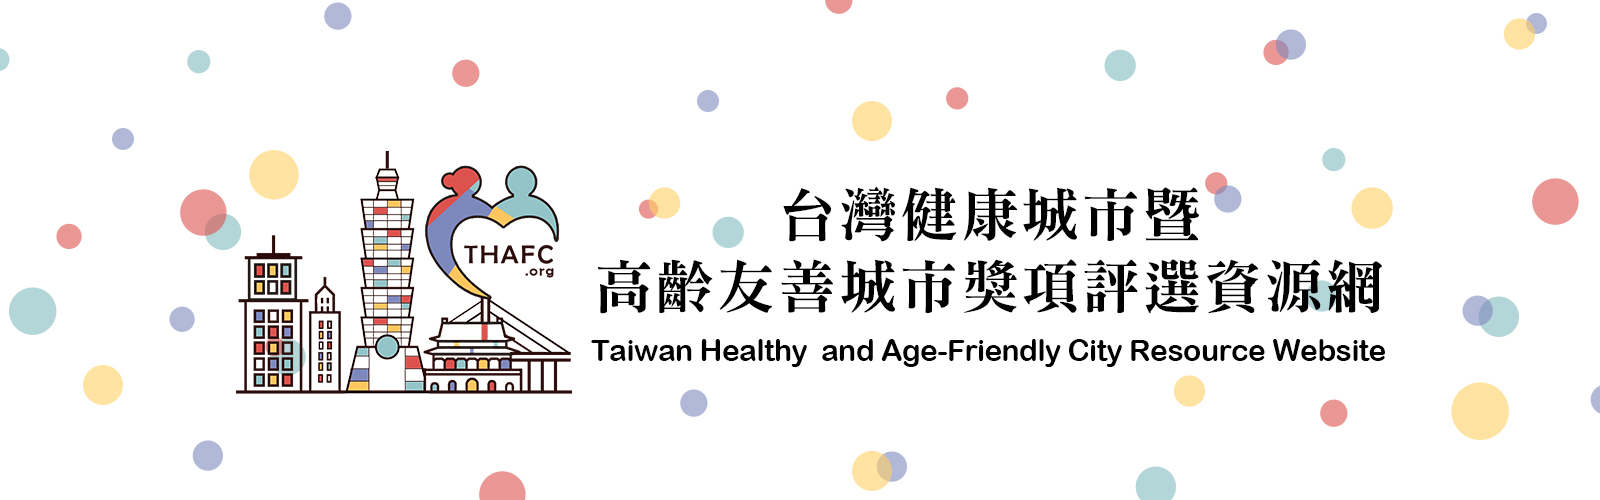 台灣健康城市暨高齡友善城市獎項評選資源網 www.thafc.org